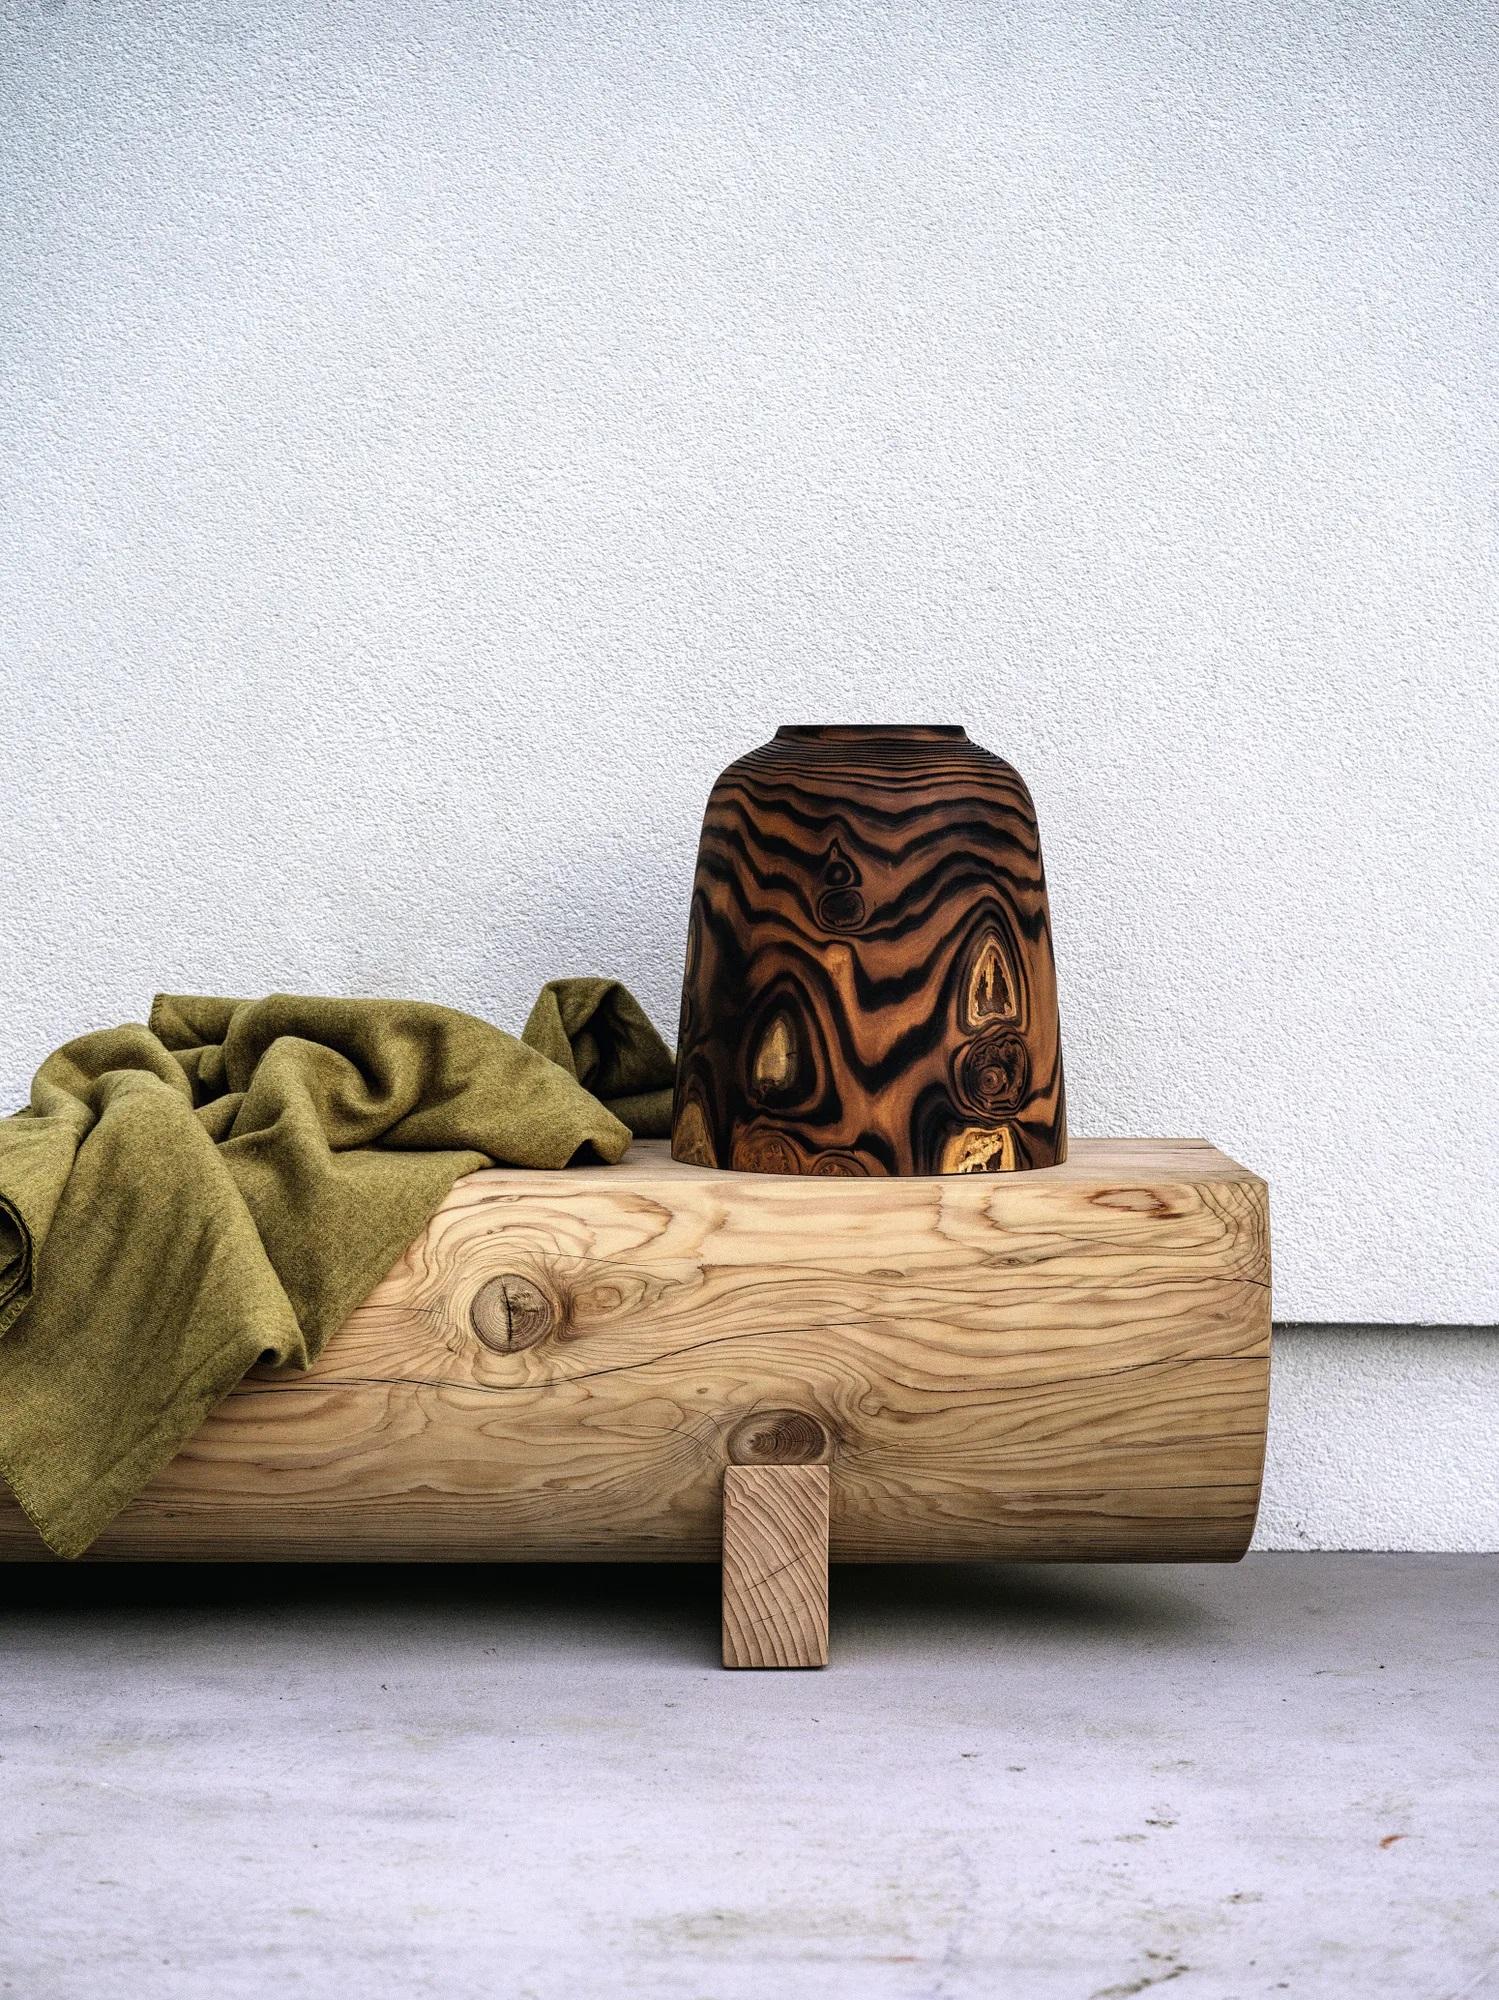 Zeitgenössische handgefertigte Bank aus Zedernholz, 100% italienisches Produkt. Wenn Sie mehr über Anpassungsmöglichkeiten und verfügbare Oberflächen erfahren möchten, sollten Sie sich mit uns in Verbindung setzen. Der Preis kann je nach Ausführung